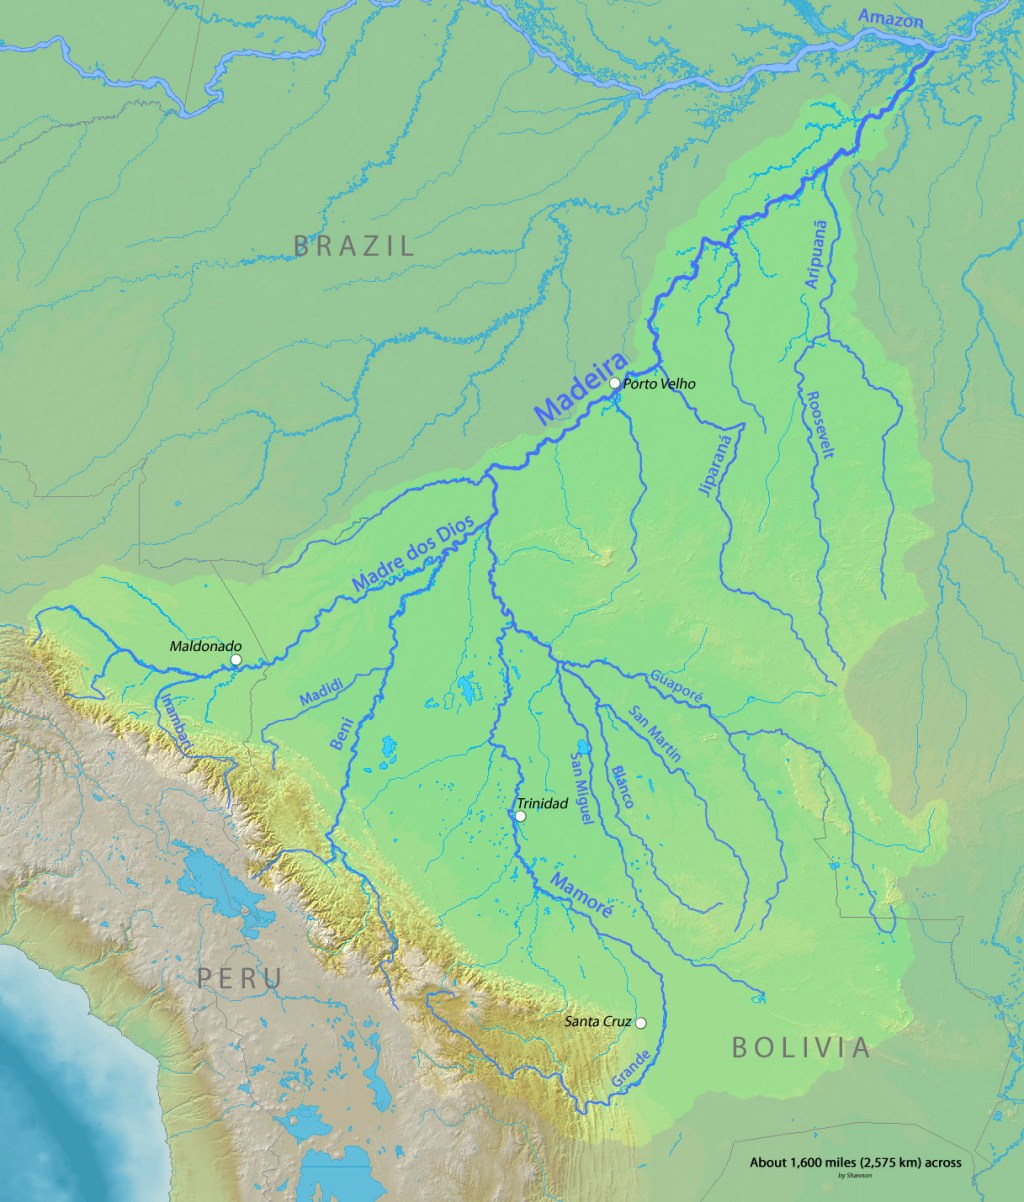 O rio Madeira e os outros rios afluentes, entre eles o rio Roosevelt (no centro direito da imagem) (foto: Wikimedia Commons)